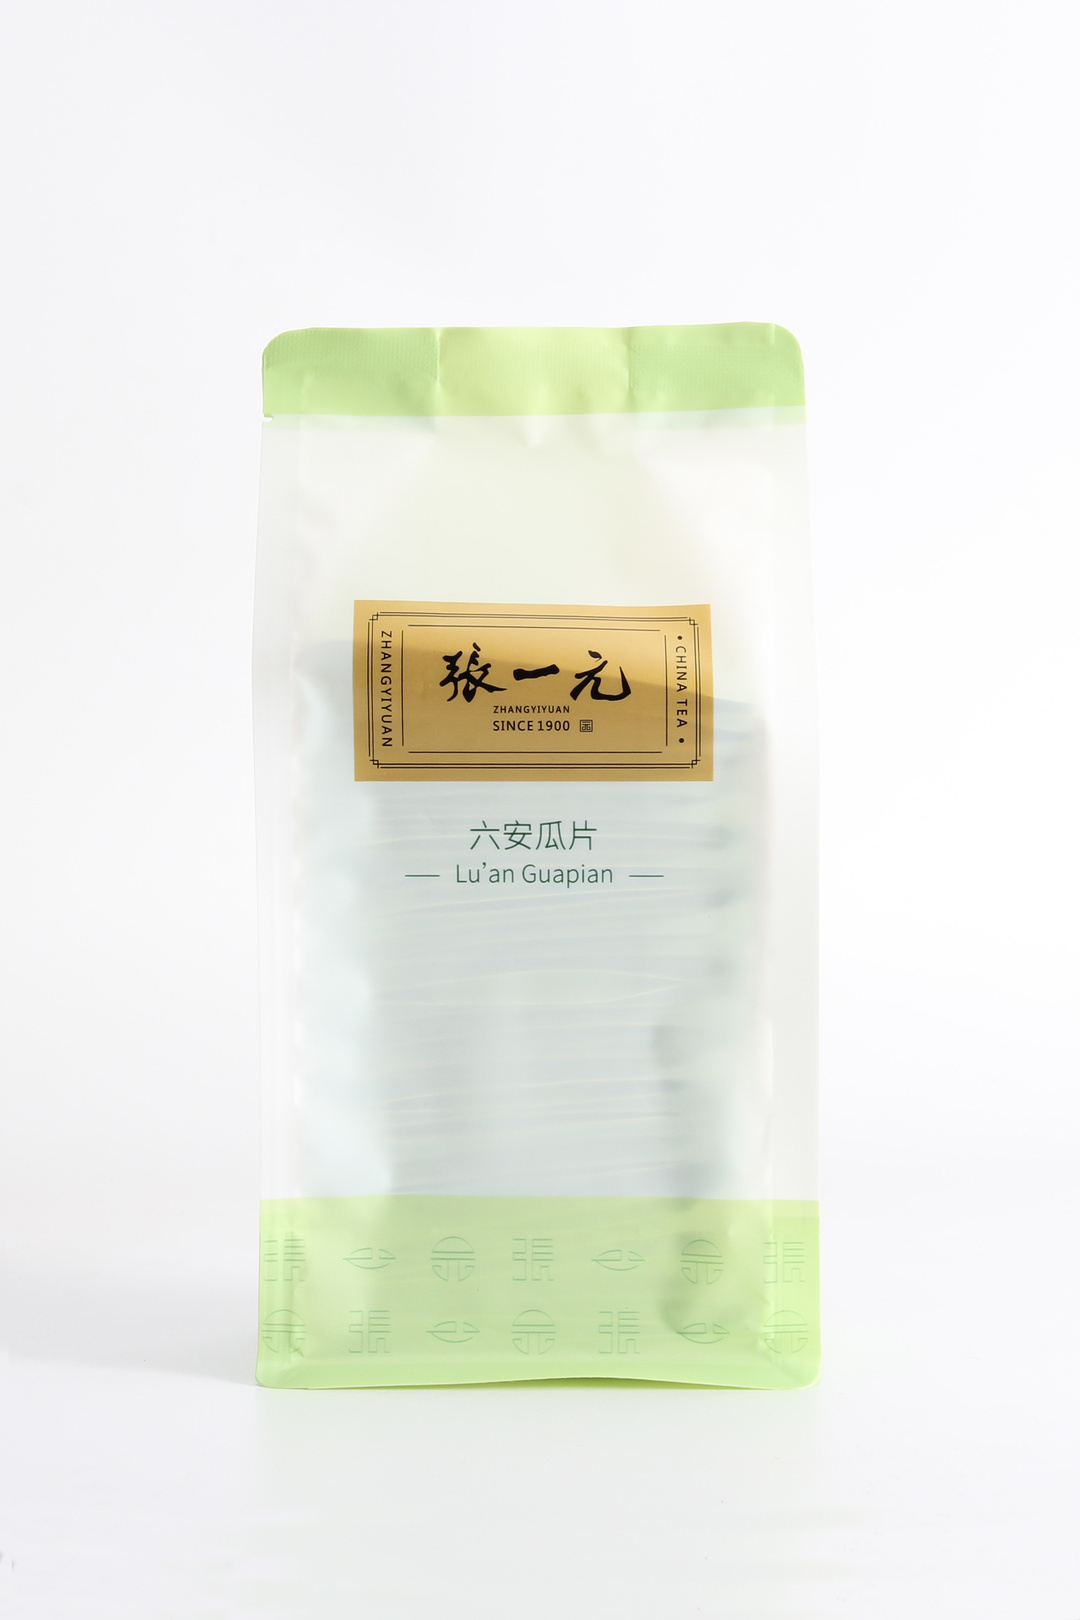 【绿茶展卖季 包邮】张一元茶叶 经典系列 绿茶 六安瓜片 袋装 80g